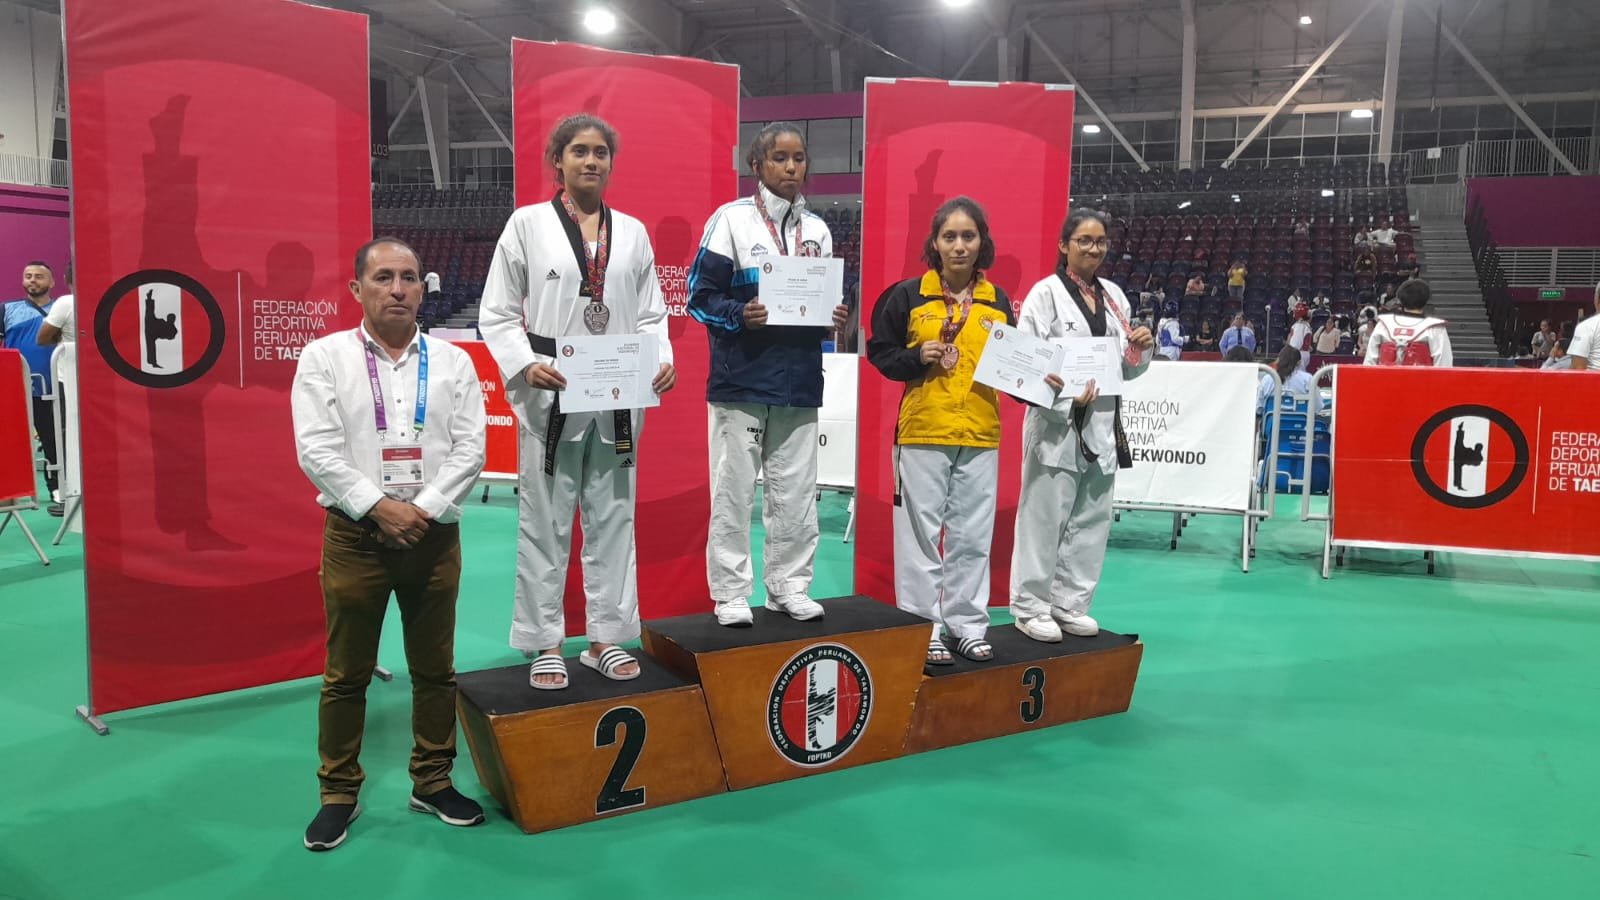 Huanuqueños destacan en Nacional de Taekwondo